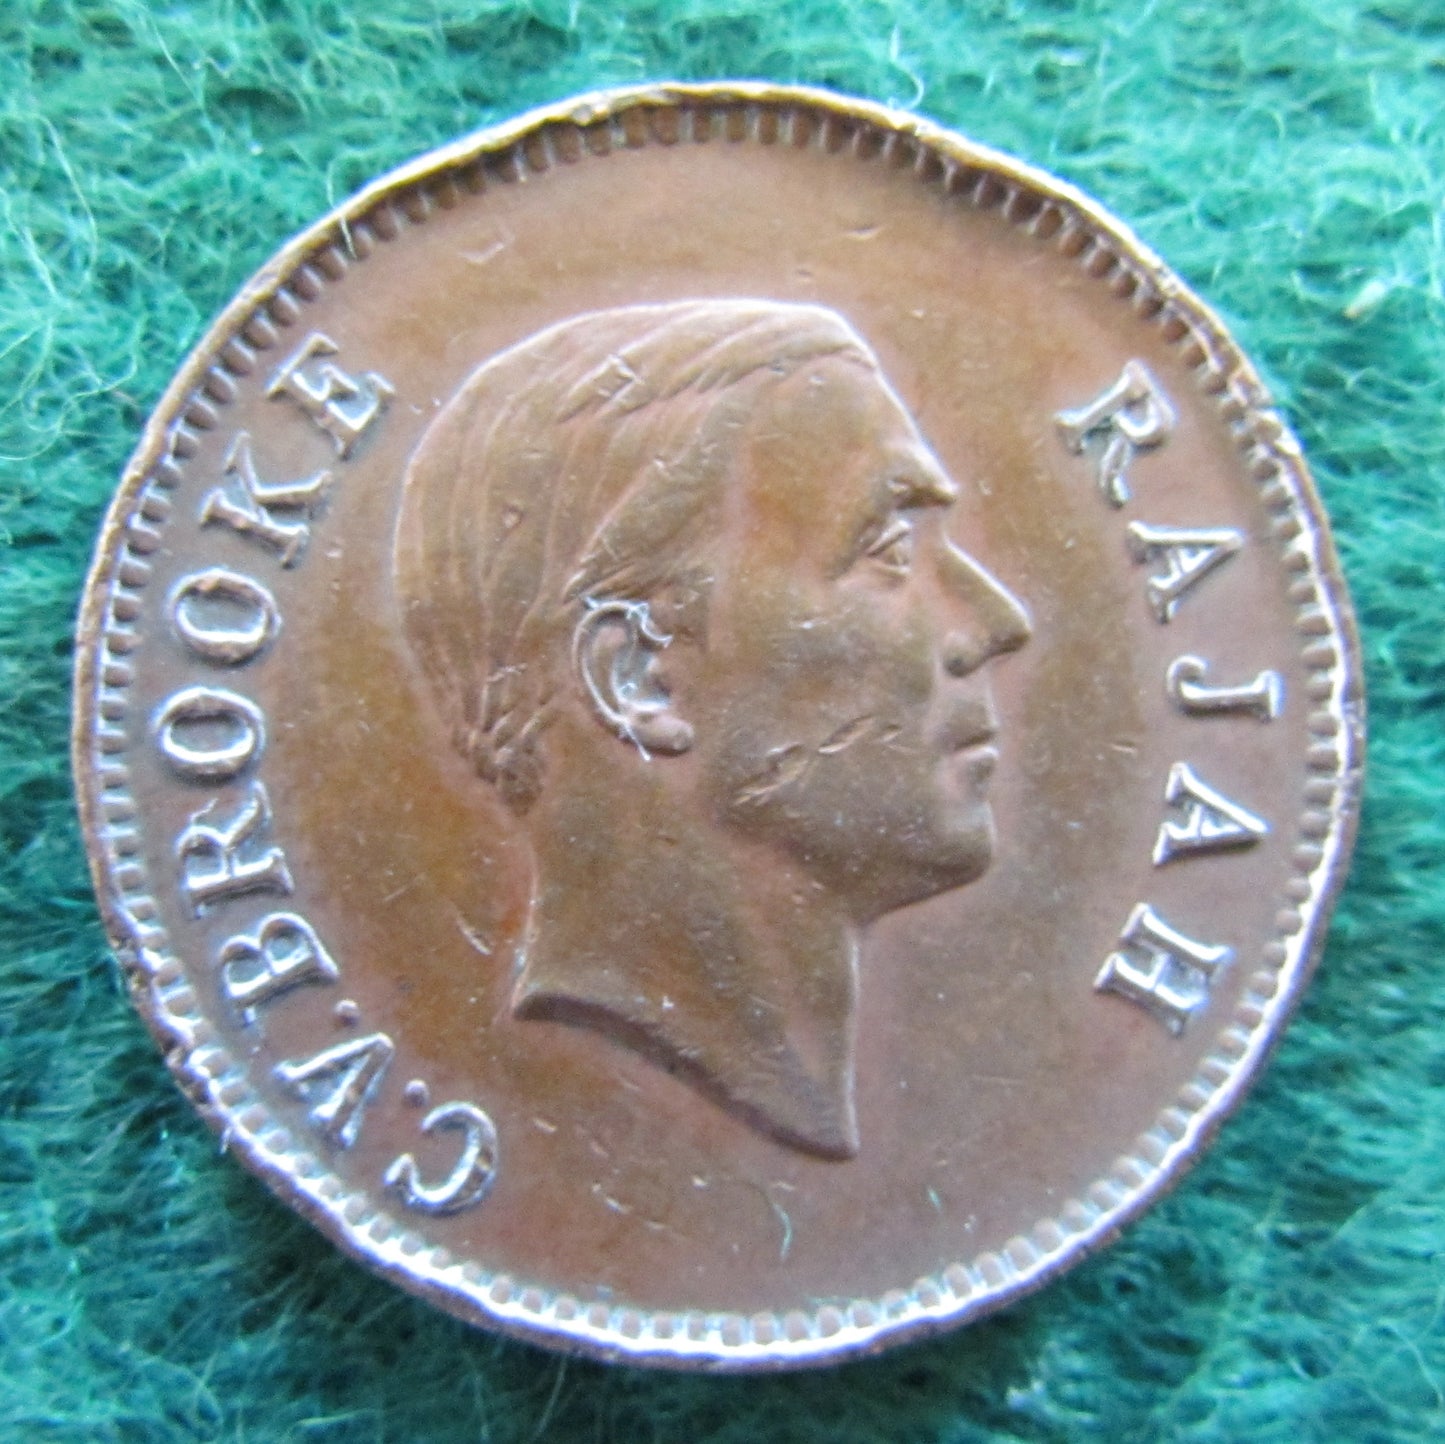 Sarawak 1937 H 1 Cent Coin C V Brooke Rajah